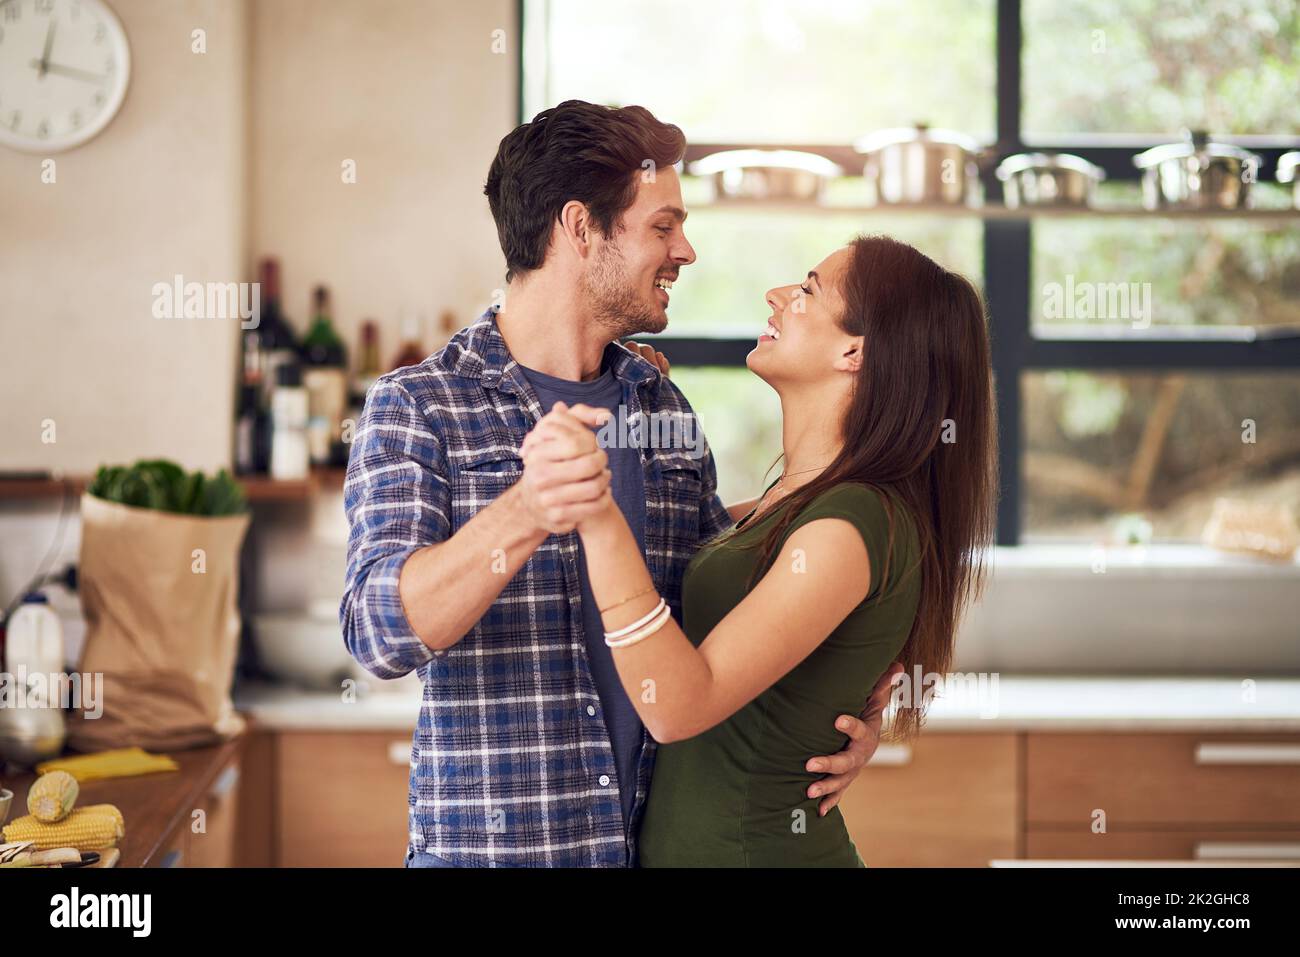 El amor nos hace aligerados. Foto de una feliz pareja joven bailando en su cocina en casa. Foto de stock